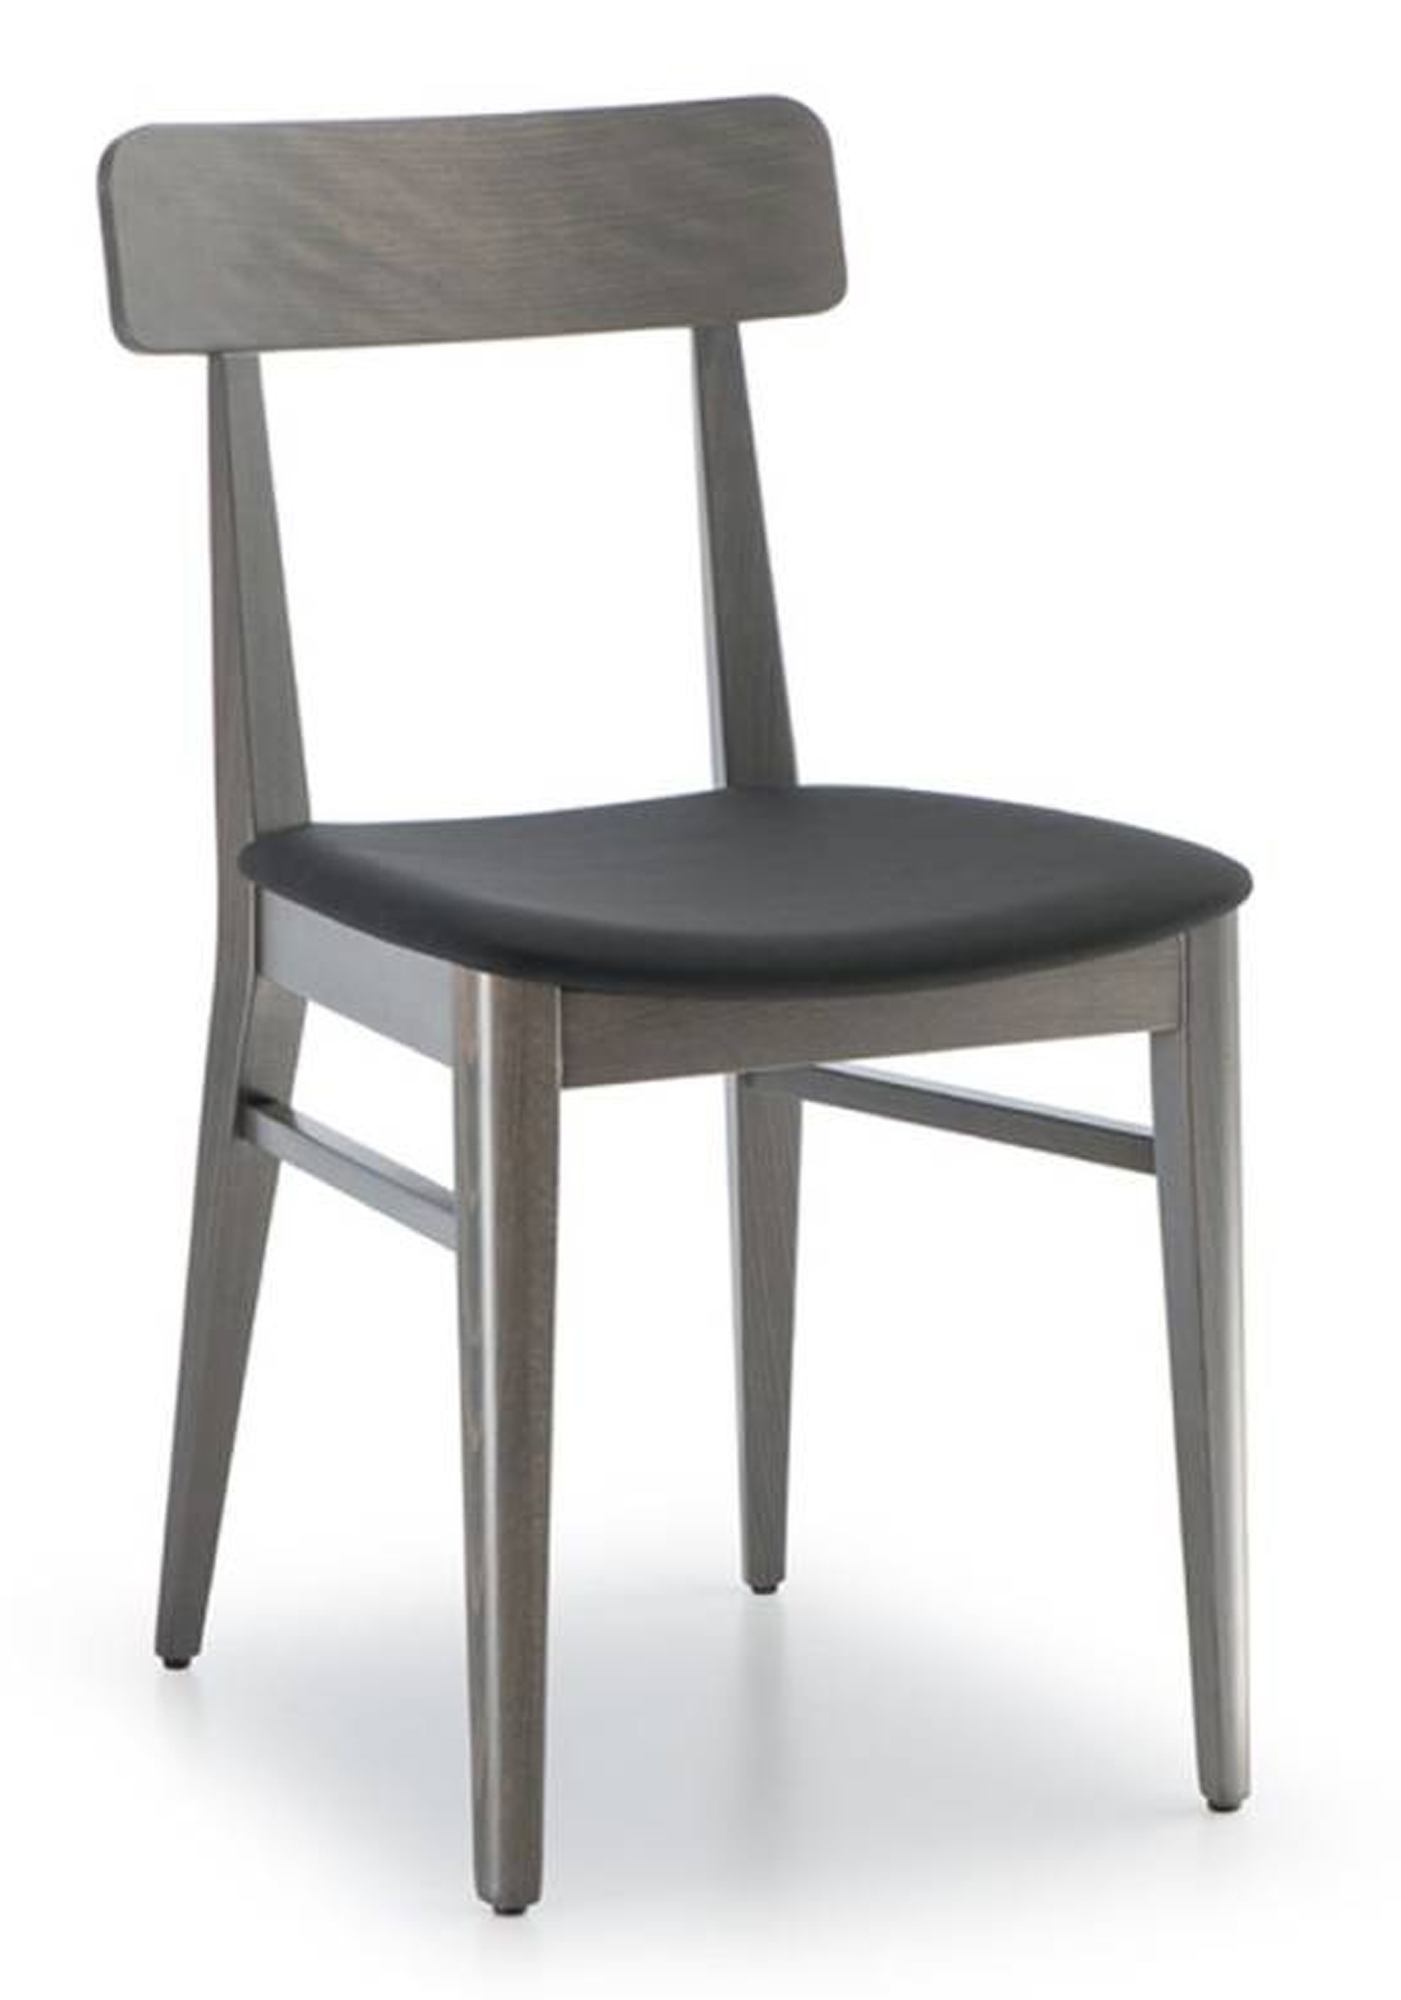 Stuhl mit gepolsterten Sitz